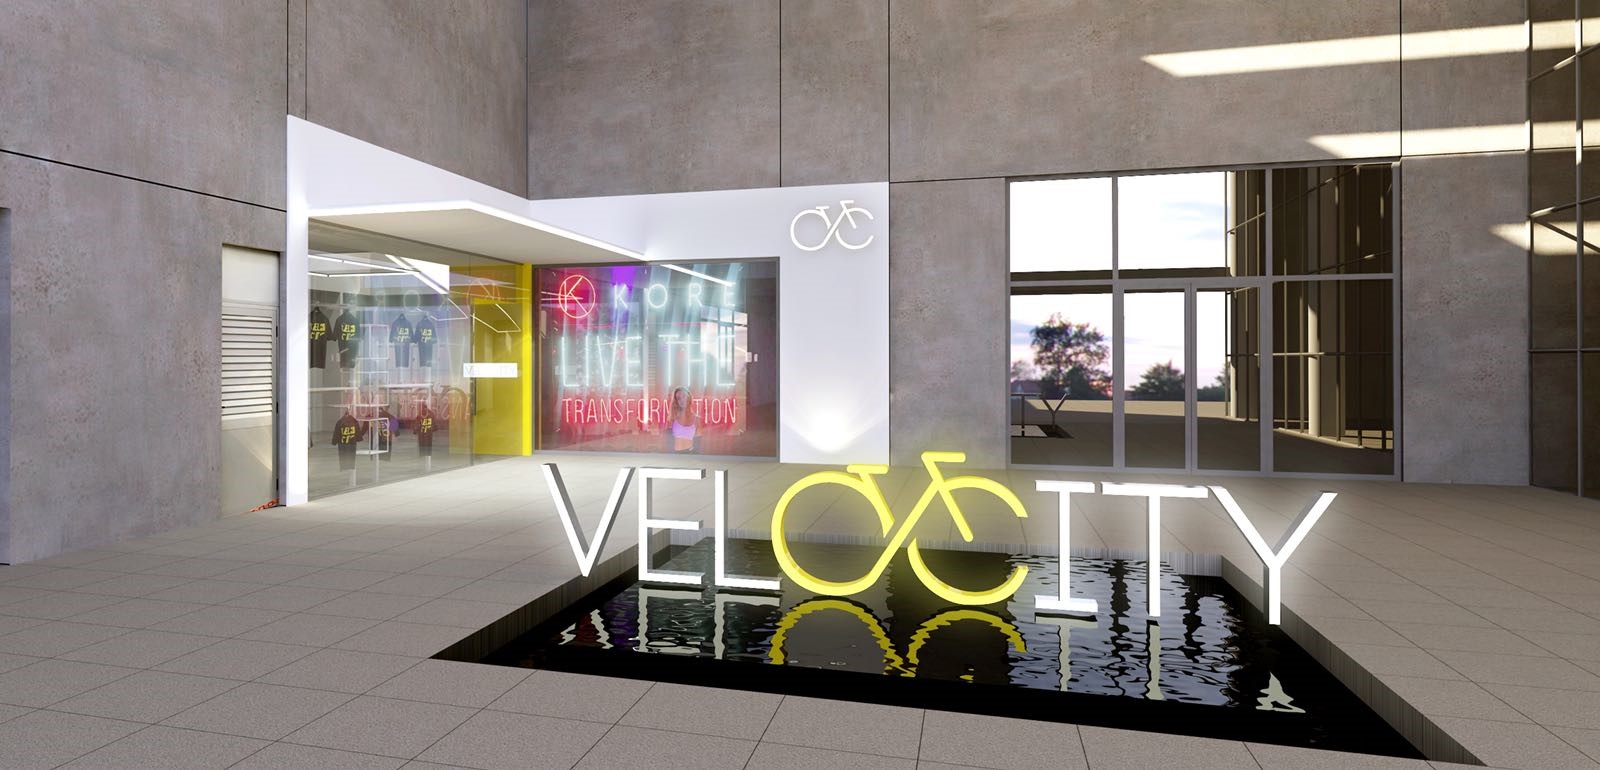 No momento você está vendo Studio Velocity desembarcará em Brasília este ano